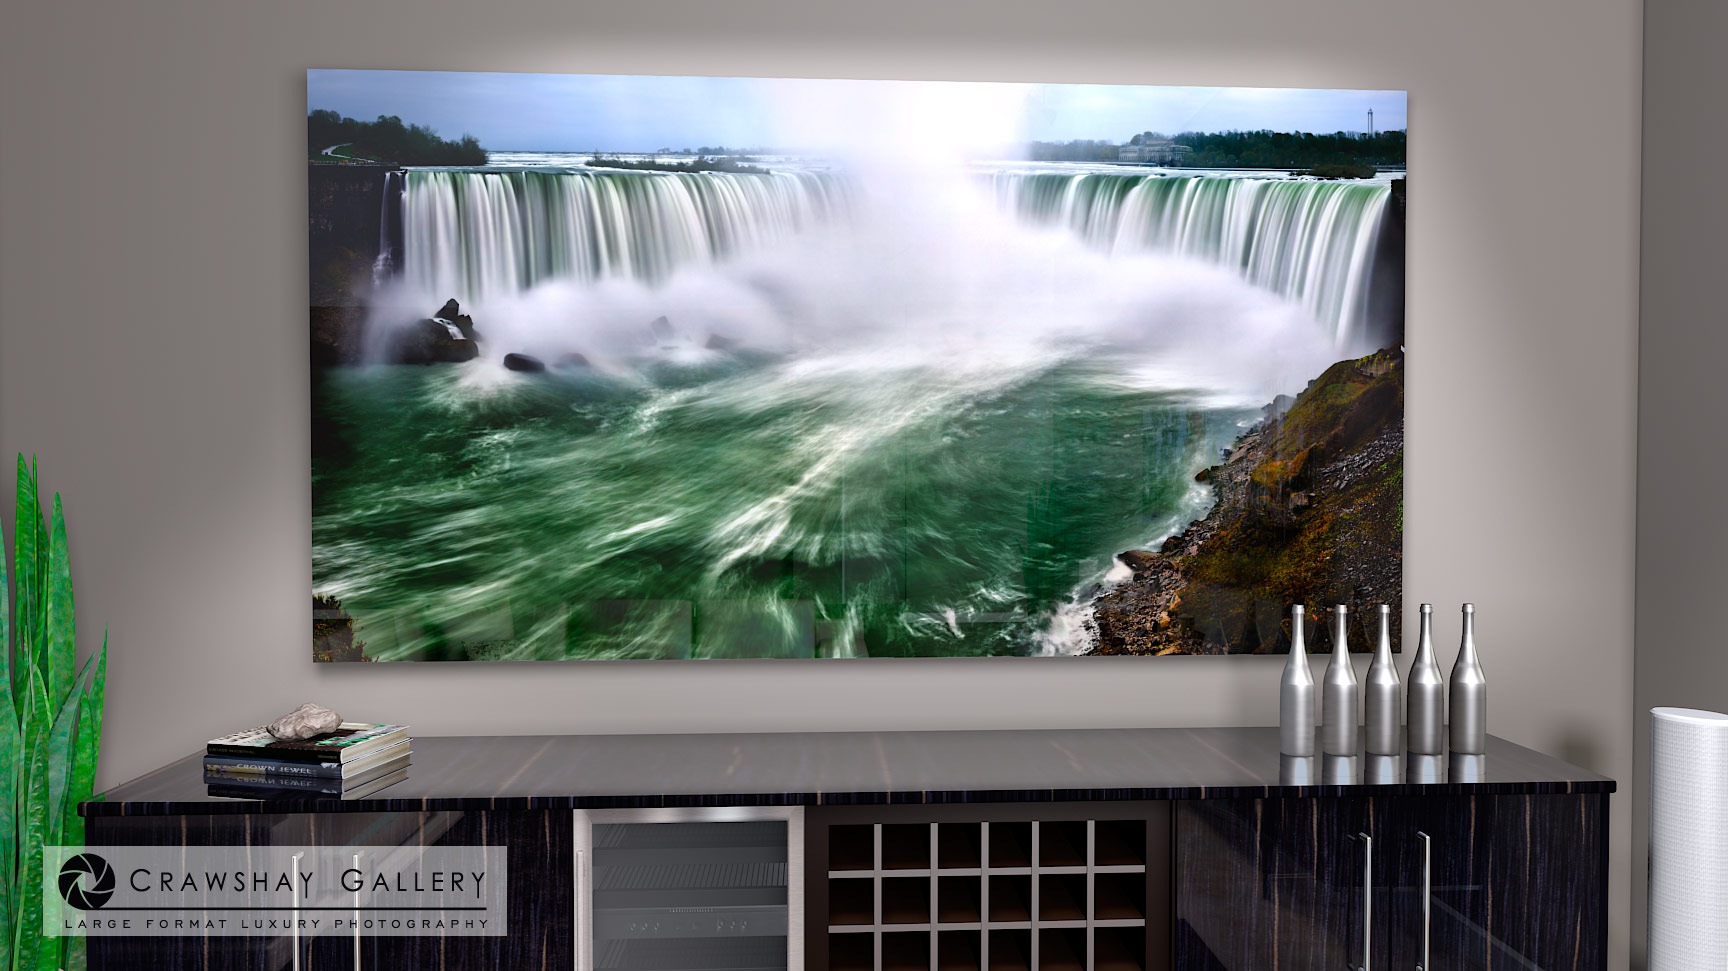 Large format fine art photograph of Niagara Falls Photograph